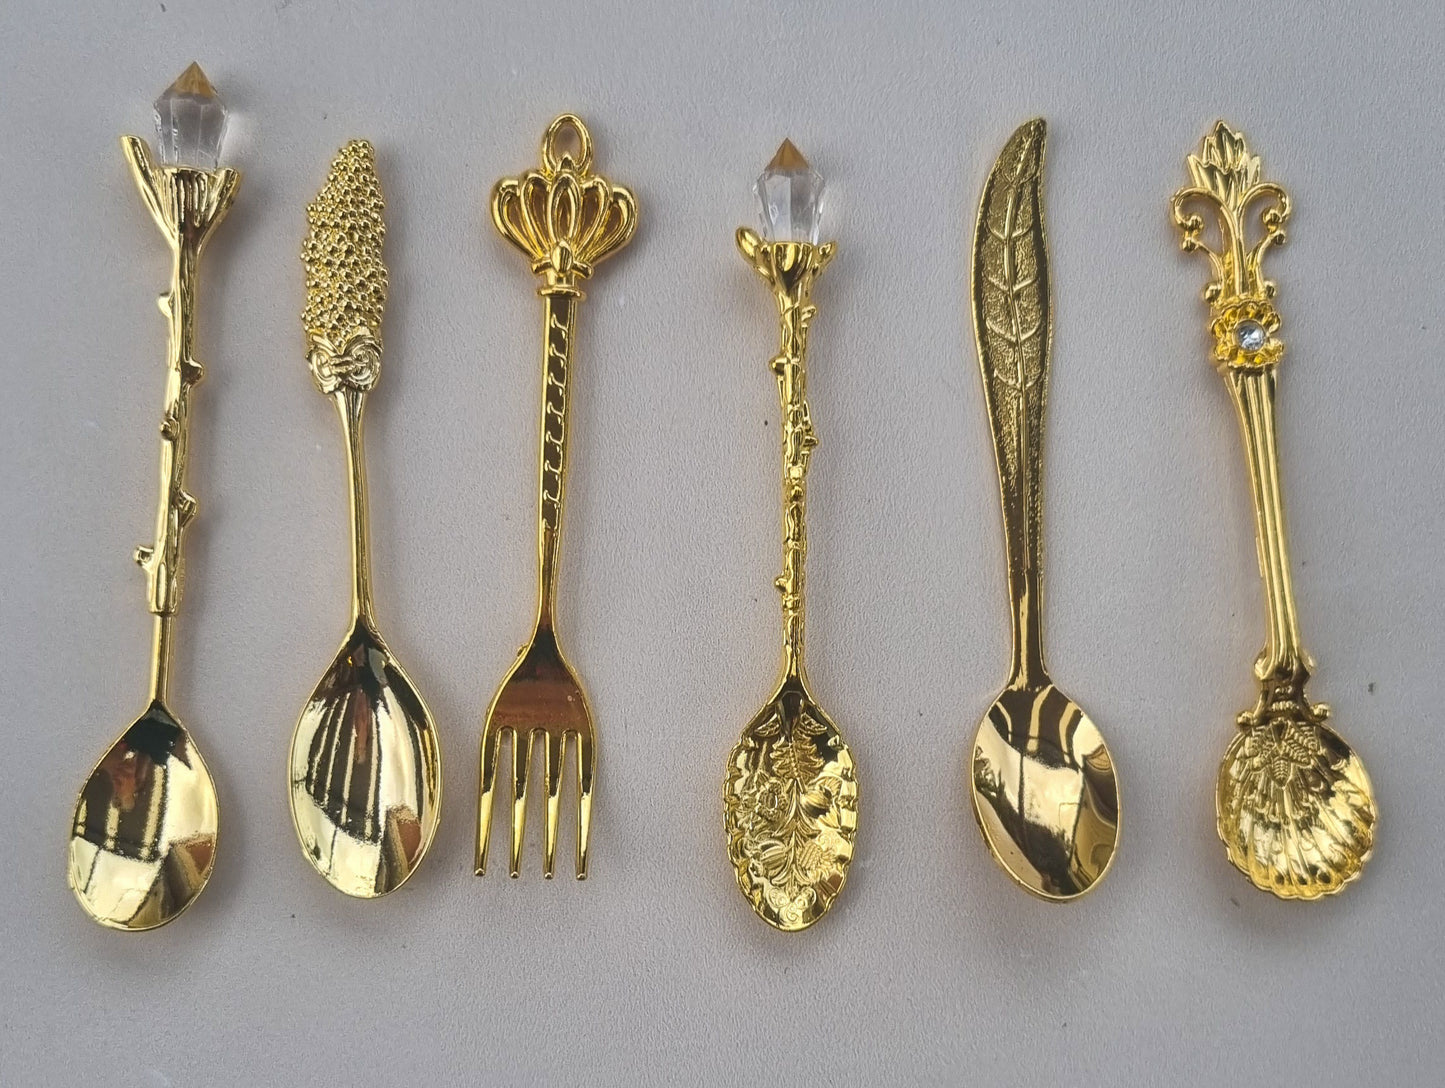 Vintage Palace Spoon Set